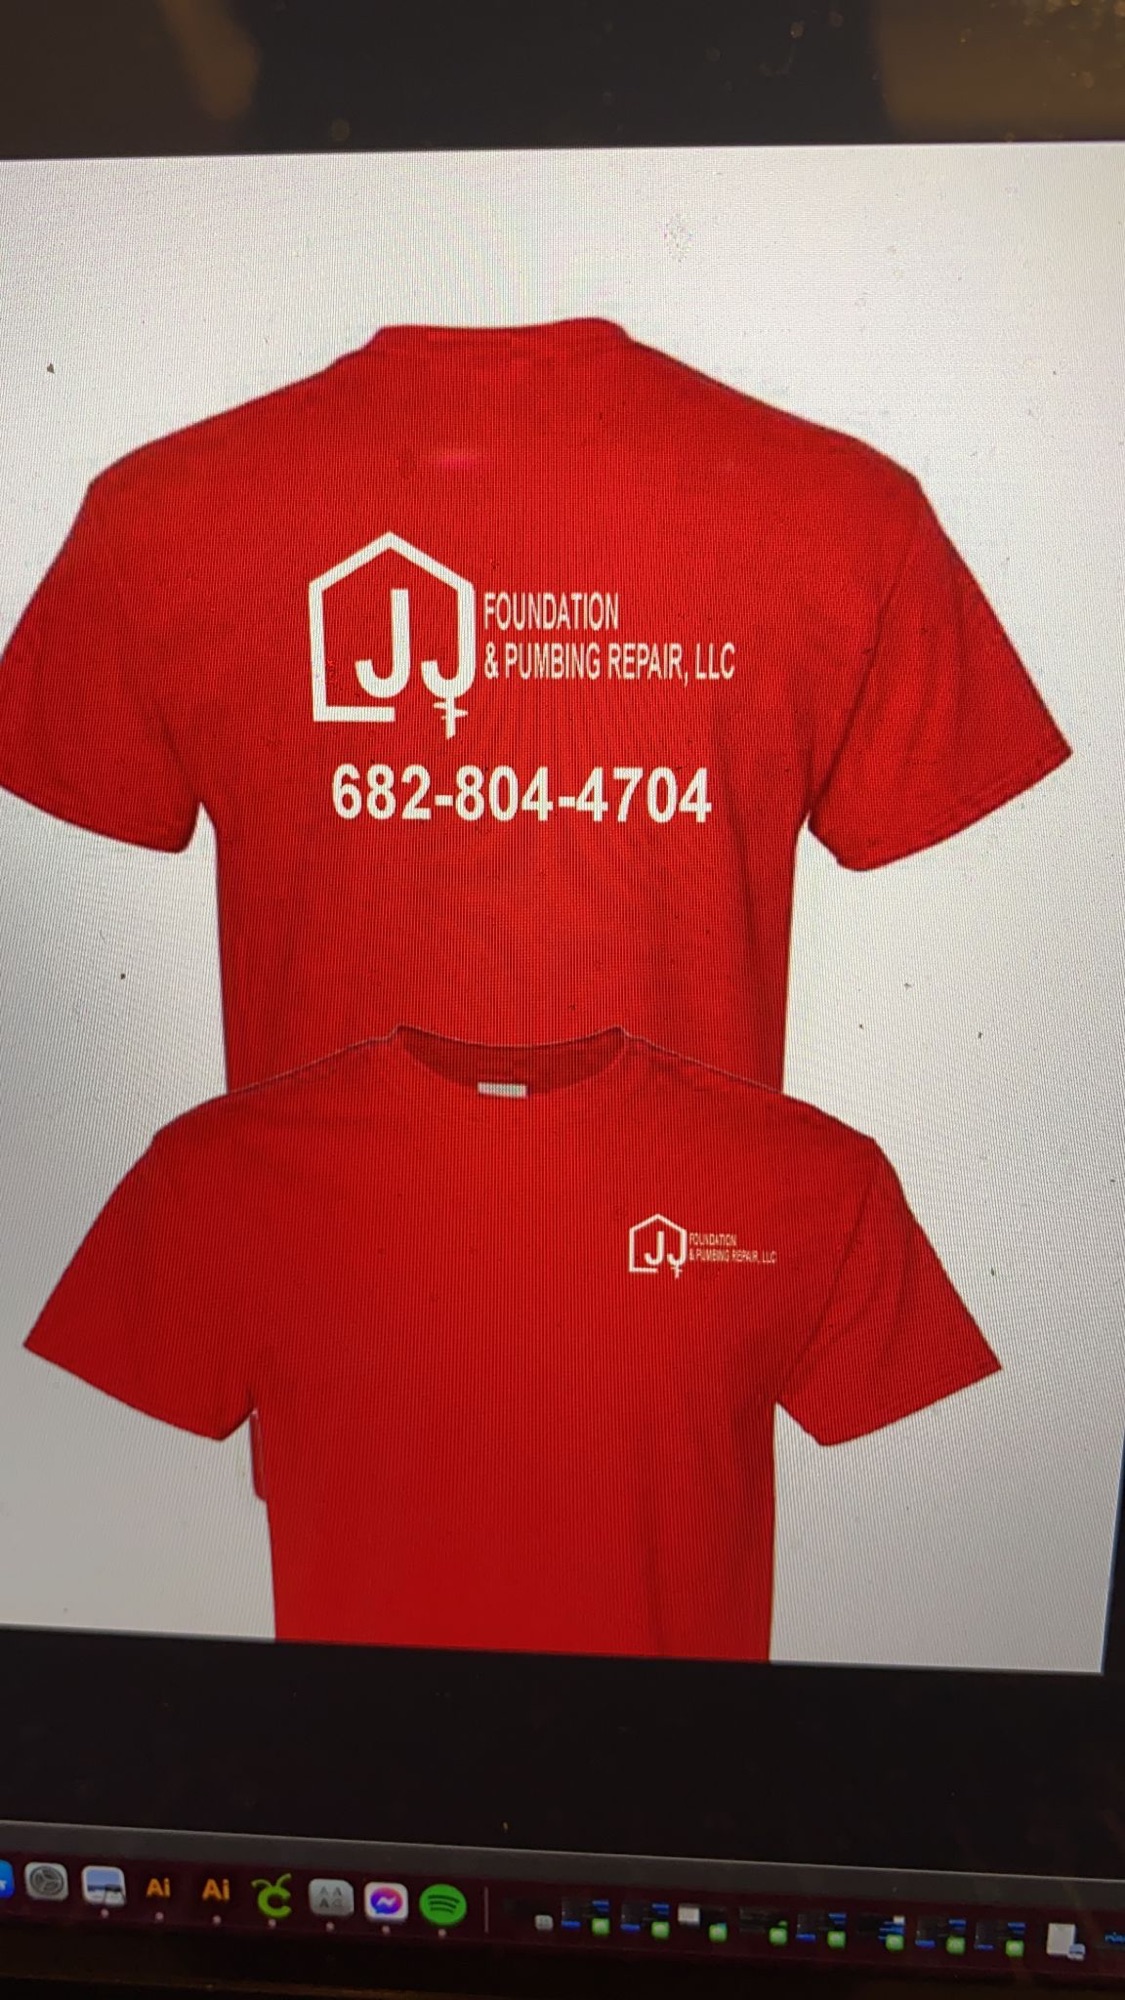 LJJ Foundation and Plumbing Repair, Inc Logo